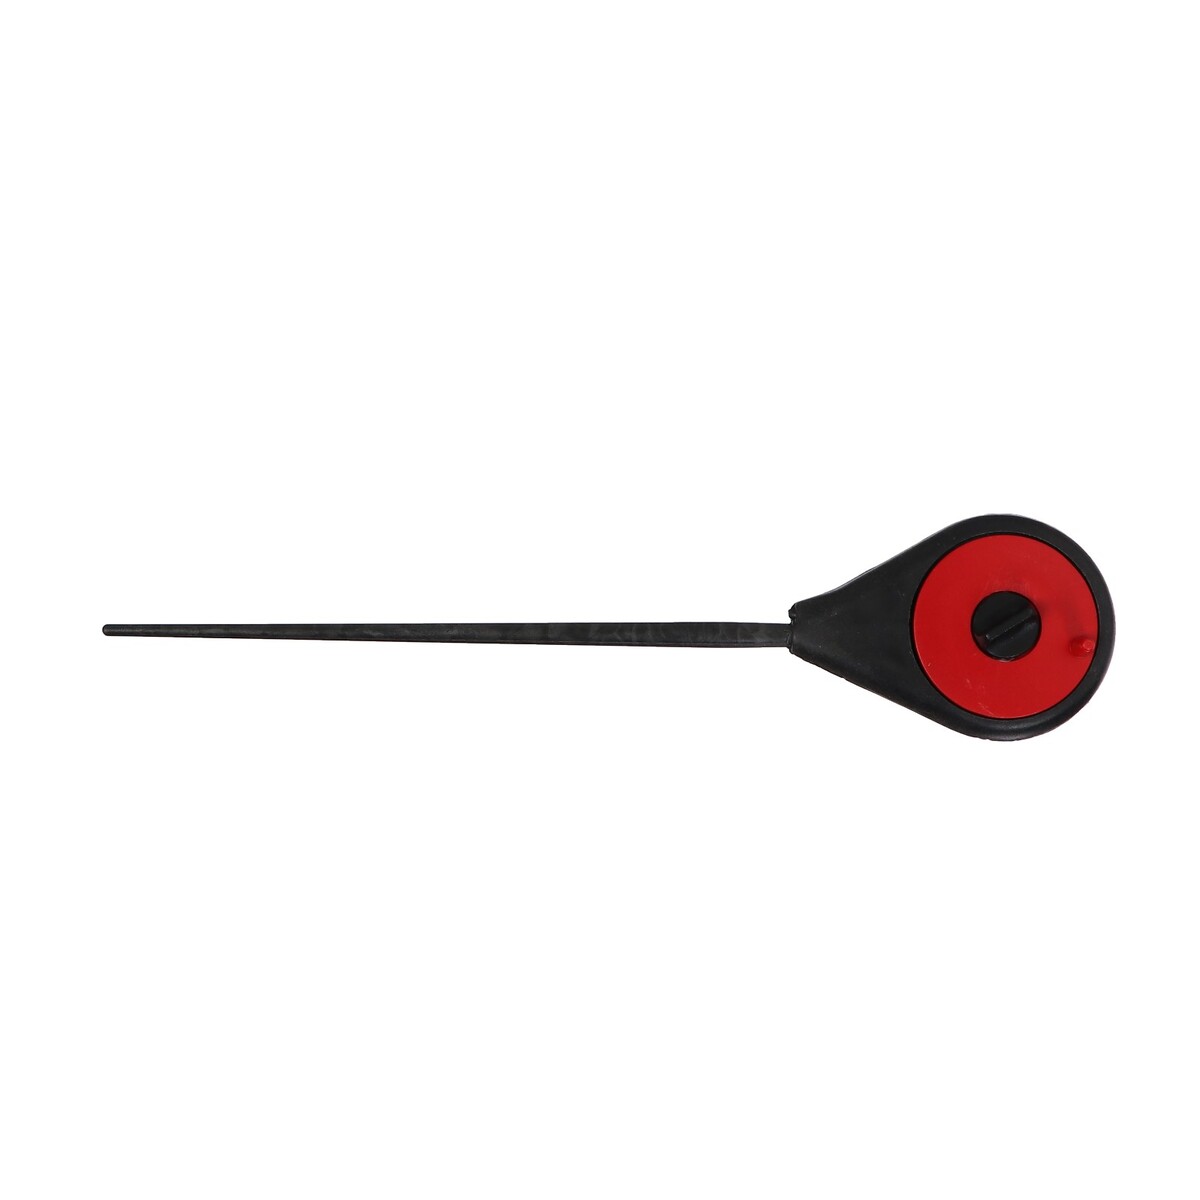 Удочка зимняя балалайка, цвет черный красный, hfb-18 удочка зимняя ручка неопрен длина 33 см оранжевый hfb 34